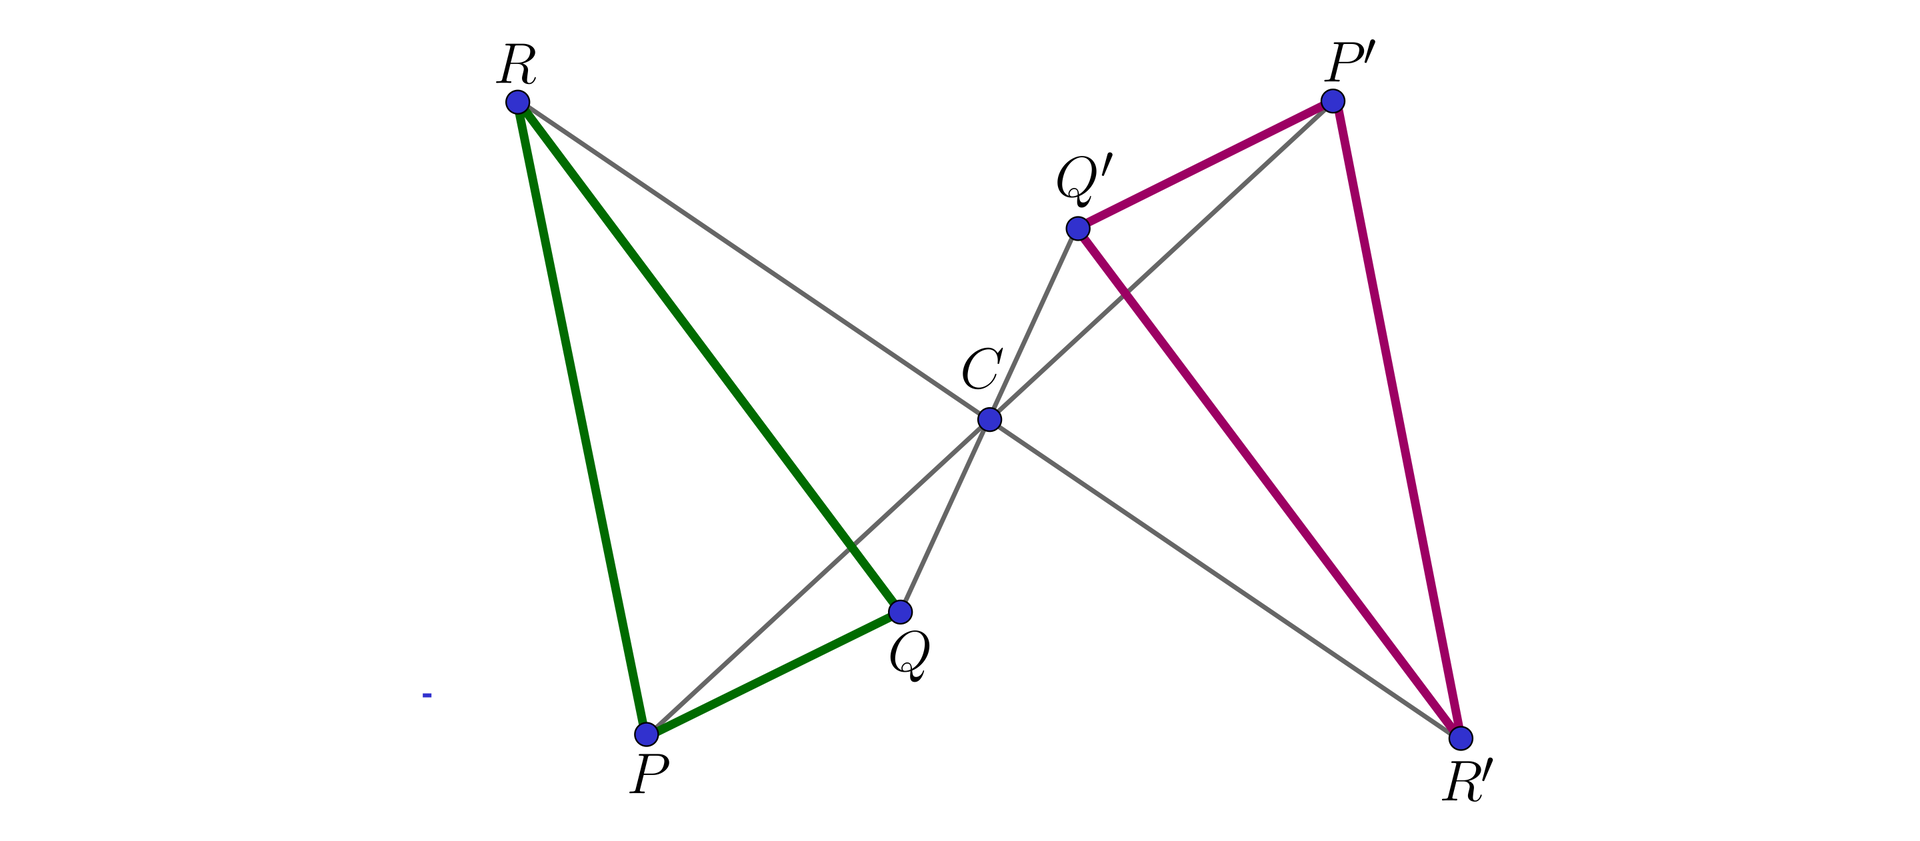 Ilustracja przedstawia dwa trójkąty oraz punkt C, pierwszy z nich ma wierzchołki P R Q, obok znajduje się drugi trójkąt, który jest symetryczny względem punktu C, jego wierzchołki to P'R'Q'. Punkt Q jest połączony z punktem Q'. Punkt P jest połączony z punktem P'. Punkt R jest połączony z punktem R'. Wszystkie odcinki łączące te punkty przechodzą przez punkt C.